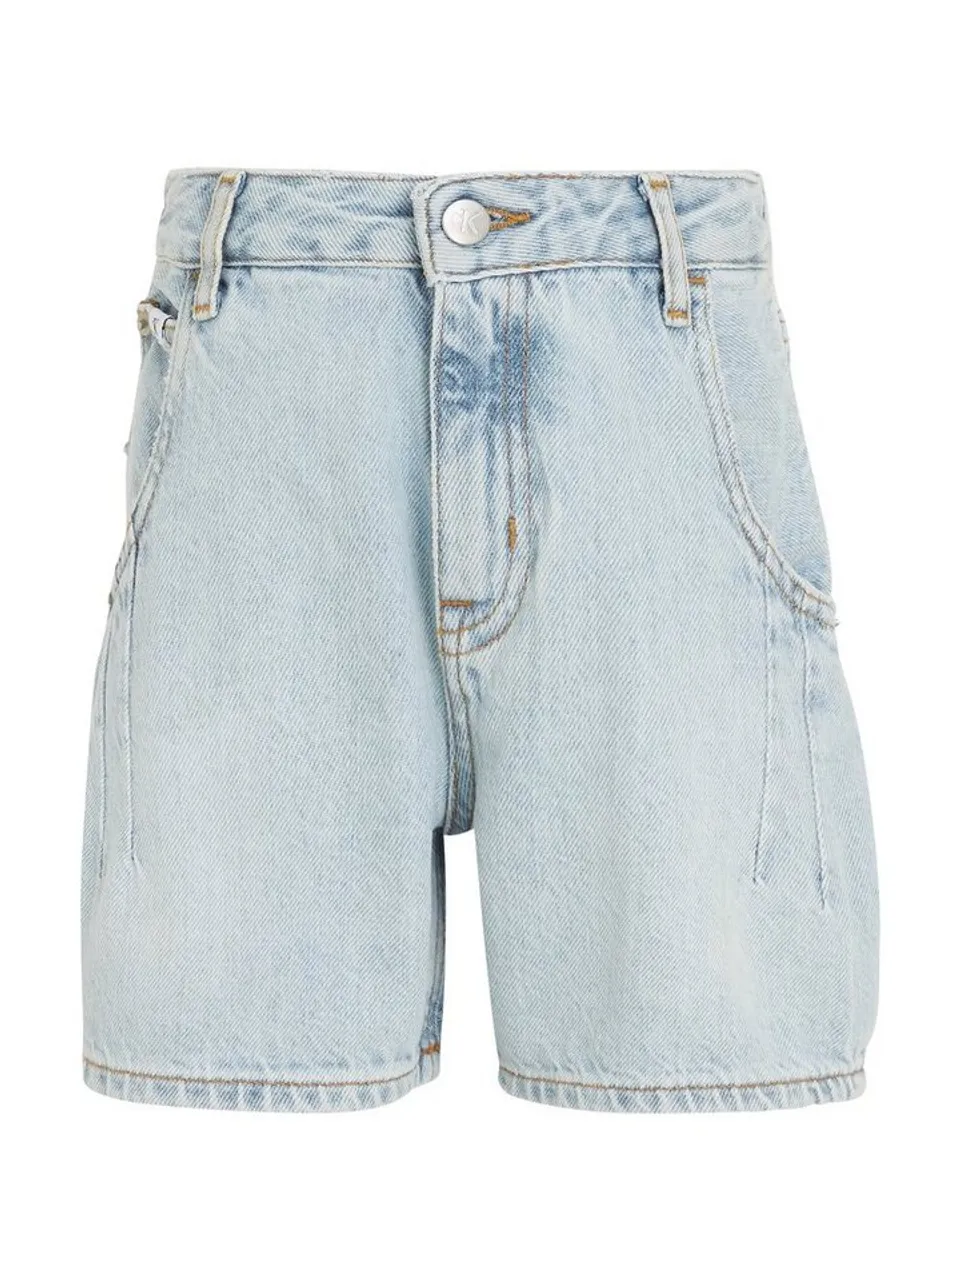 Calvin Klein Jeans Shorts BARREL POWDER BLUE DENIM SHORTS Kinder bis 16 Jahre